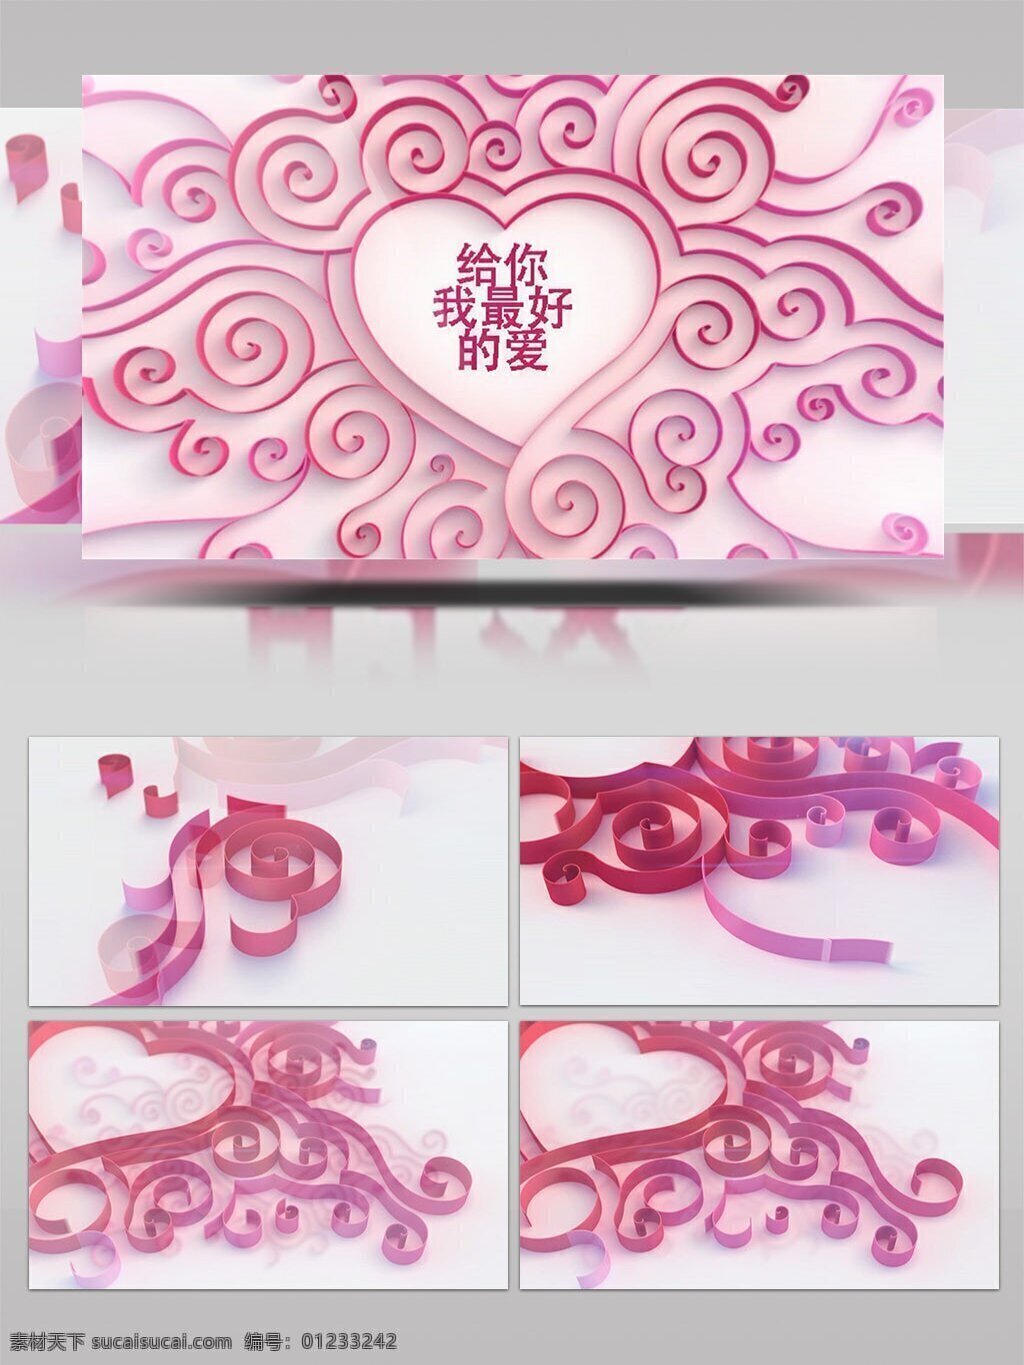 缎带 形成 浪漫 粉色 爱心 图案 ae 模板 情人节 婚礼 心形 甜蜜 表白 爱情 3d效果 片头 漂亮 生长 条带